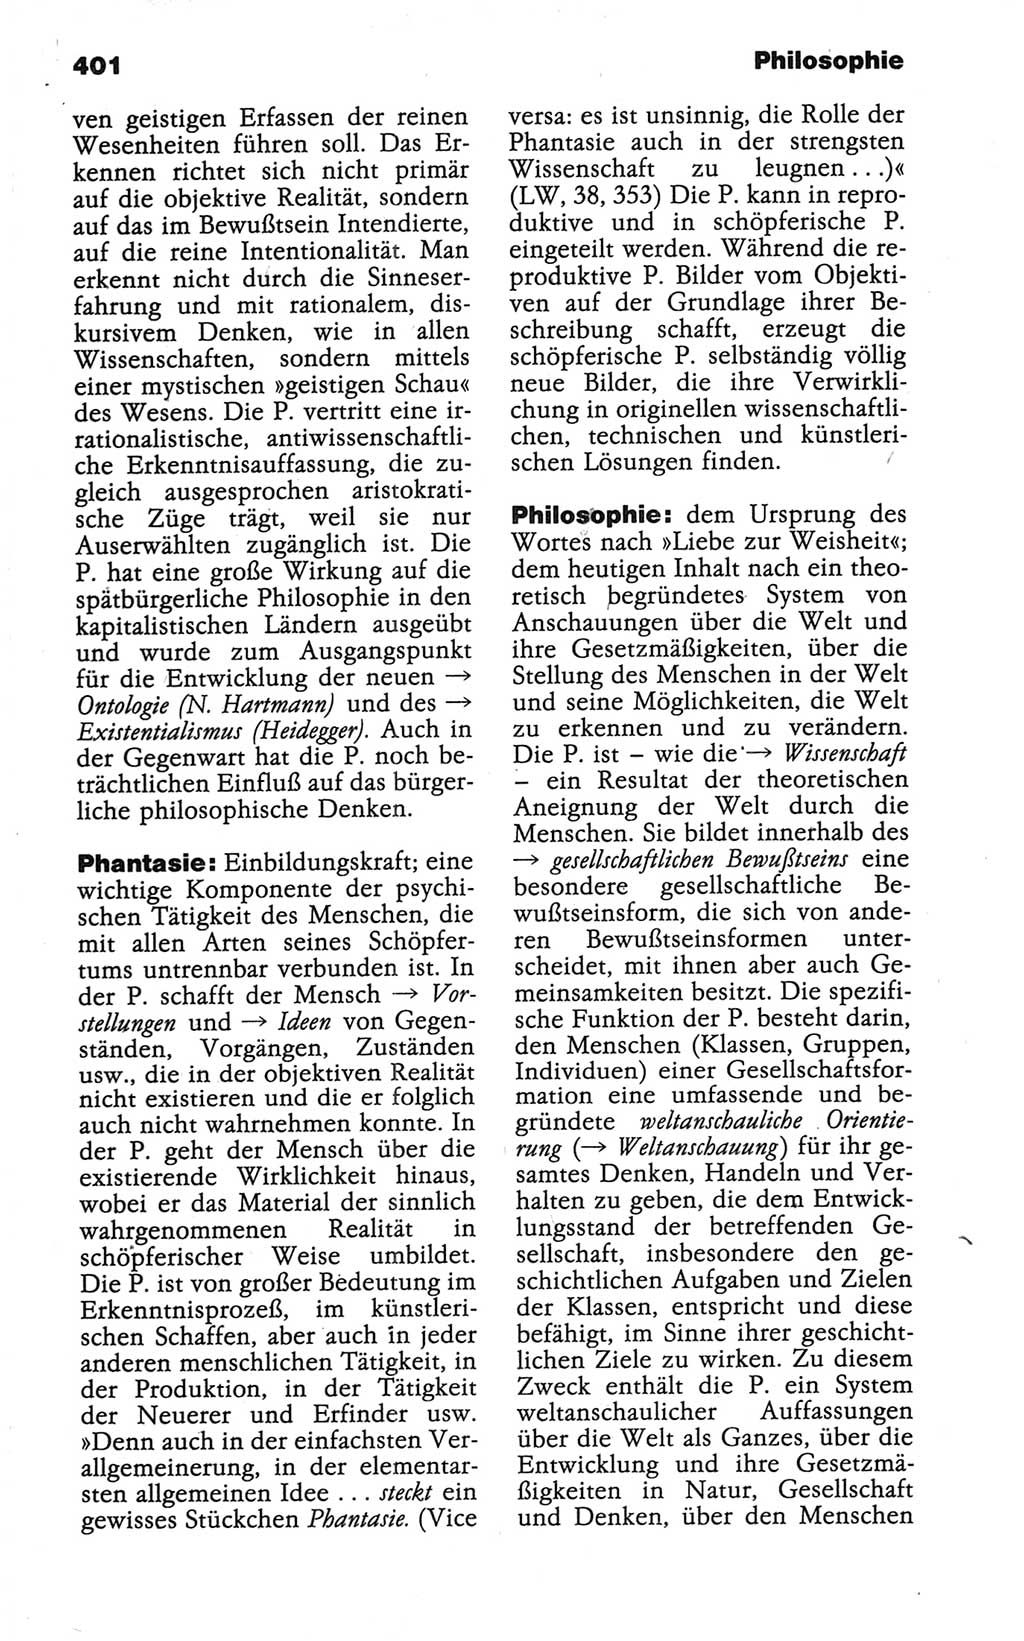 Wörterbuch der marxistisch-leninistischen Philosophie [Deutsche Demokratische Republik (DDR)] 1986, Seite 401 (Wb. ML Phil. DDR 1986, S. 401)